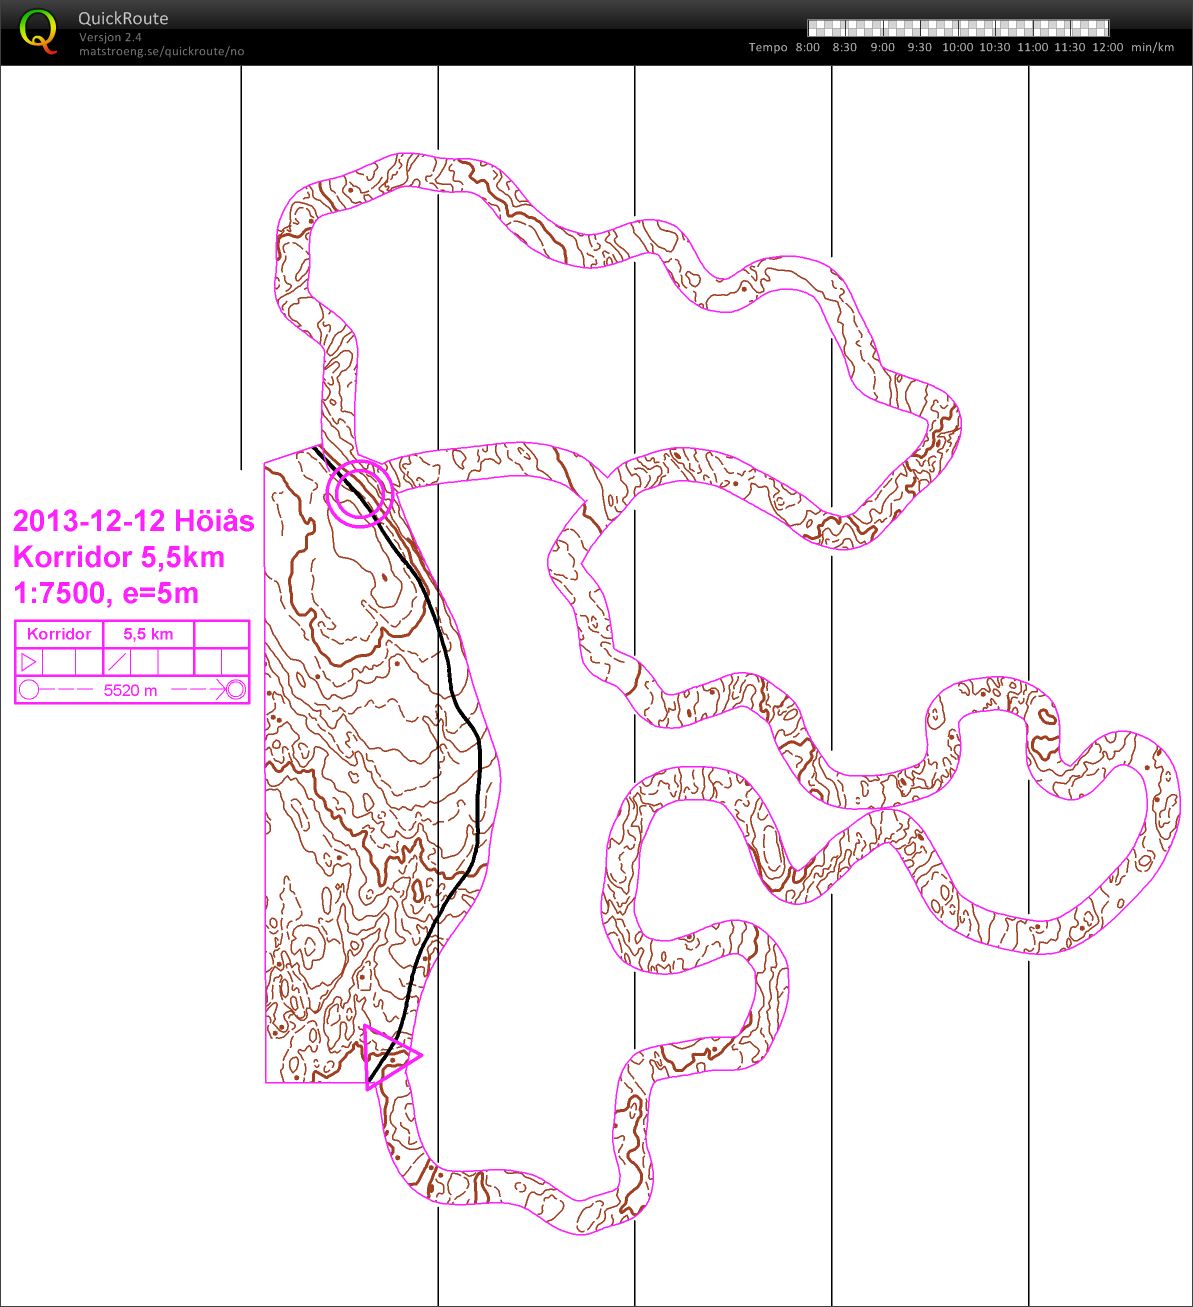 Kurvekorridor (2013-12-12)